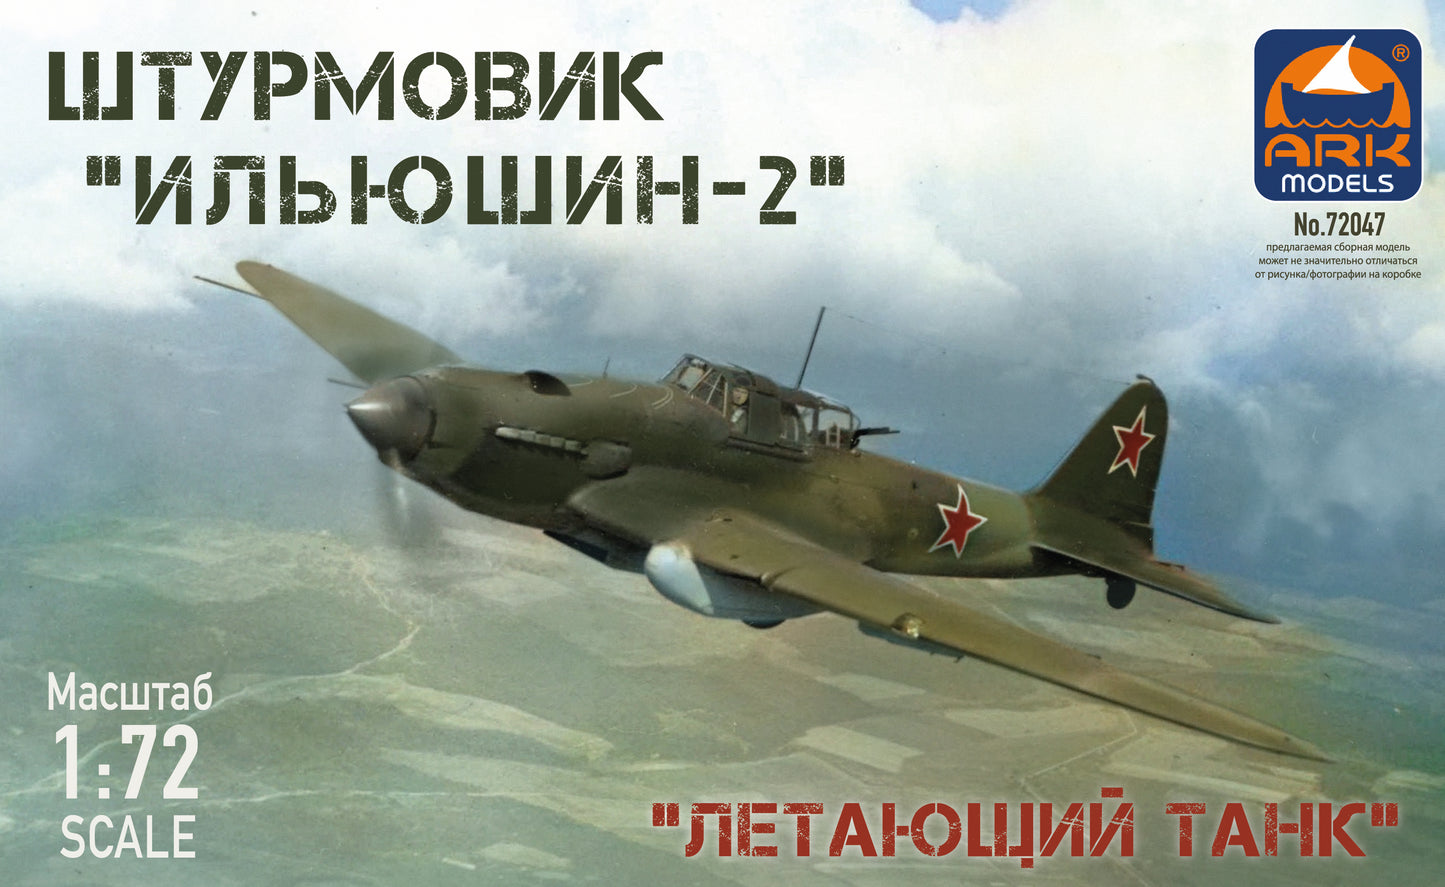 ARK-72047 - советский бронированный штурмовик Ил-2, времен Второй мировой войны